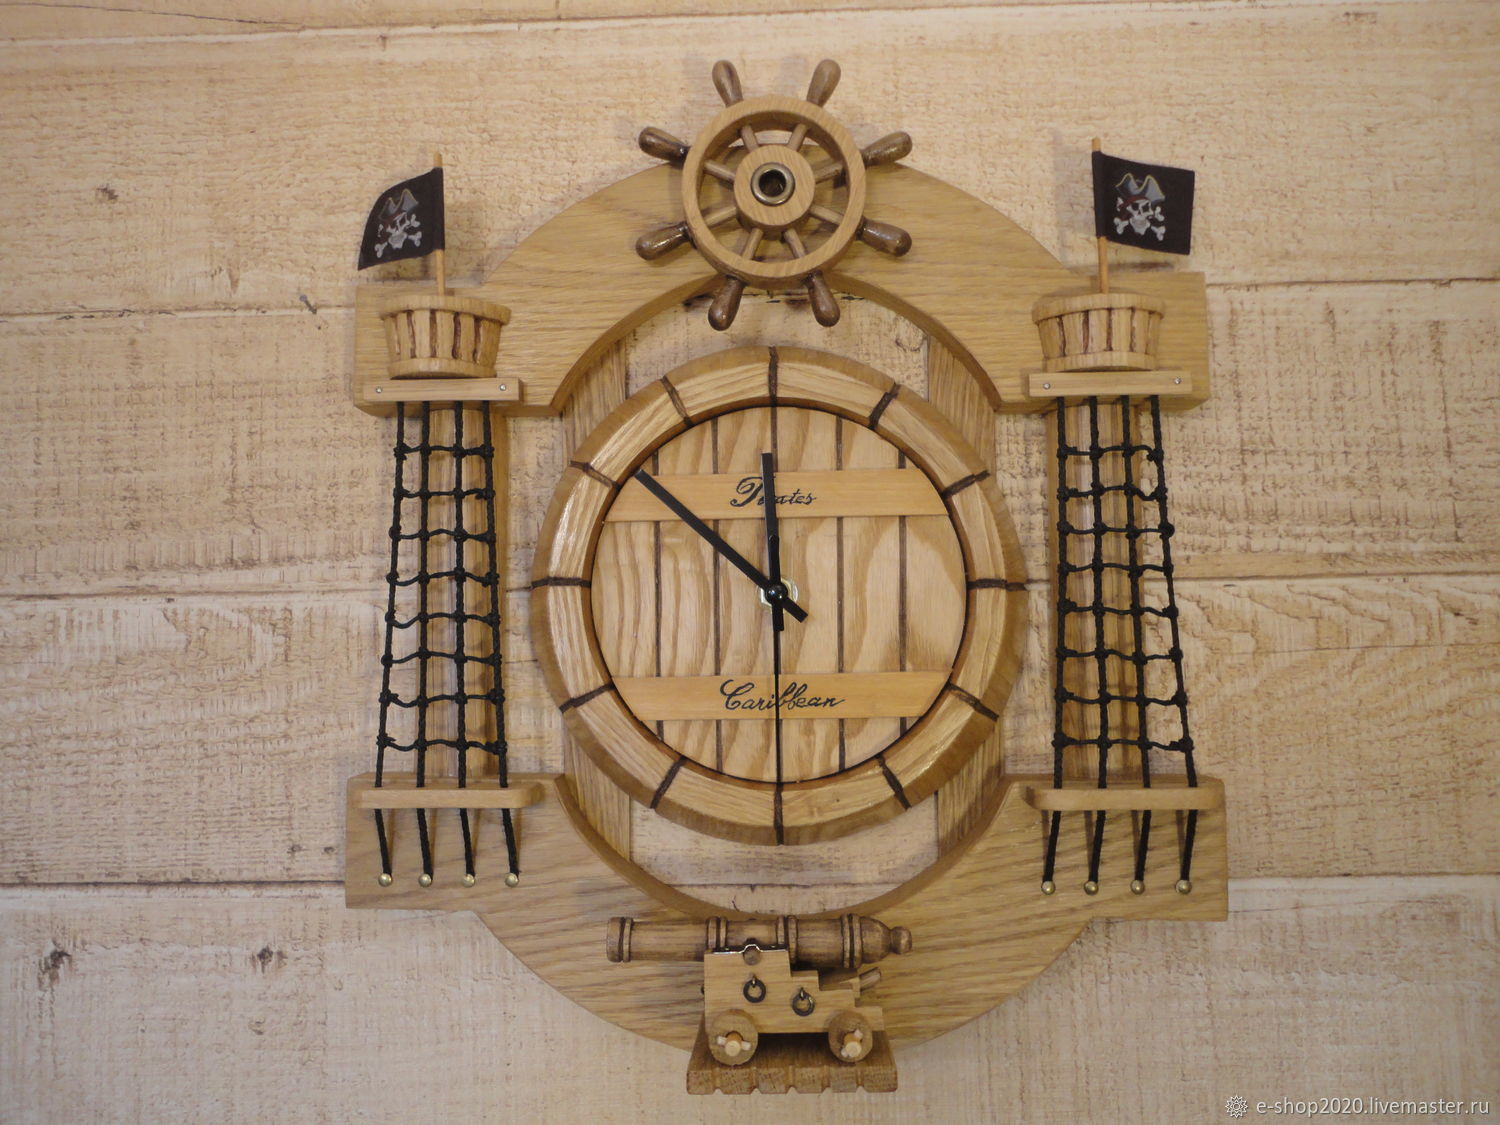 Морские часы настенные. Часы в морском стиле настенные. Часы настенные морская тематика. Часы настенные деревянные. Часы настенные "морские".